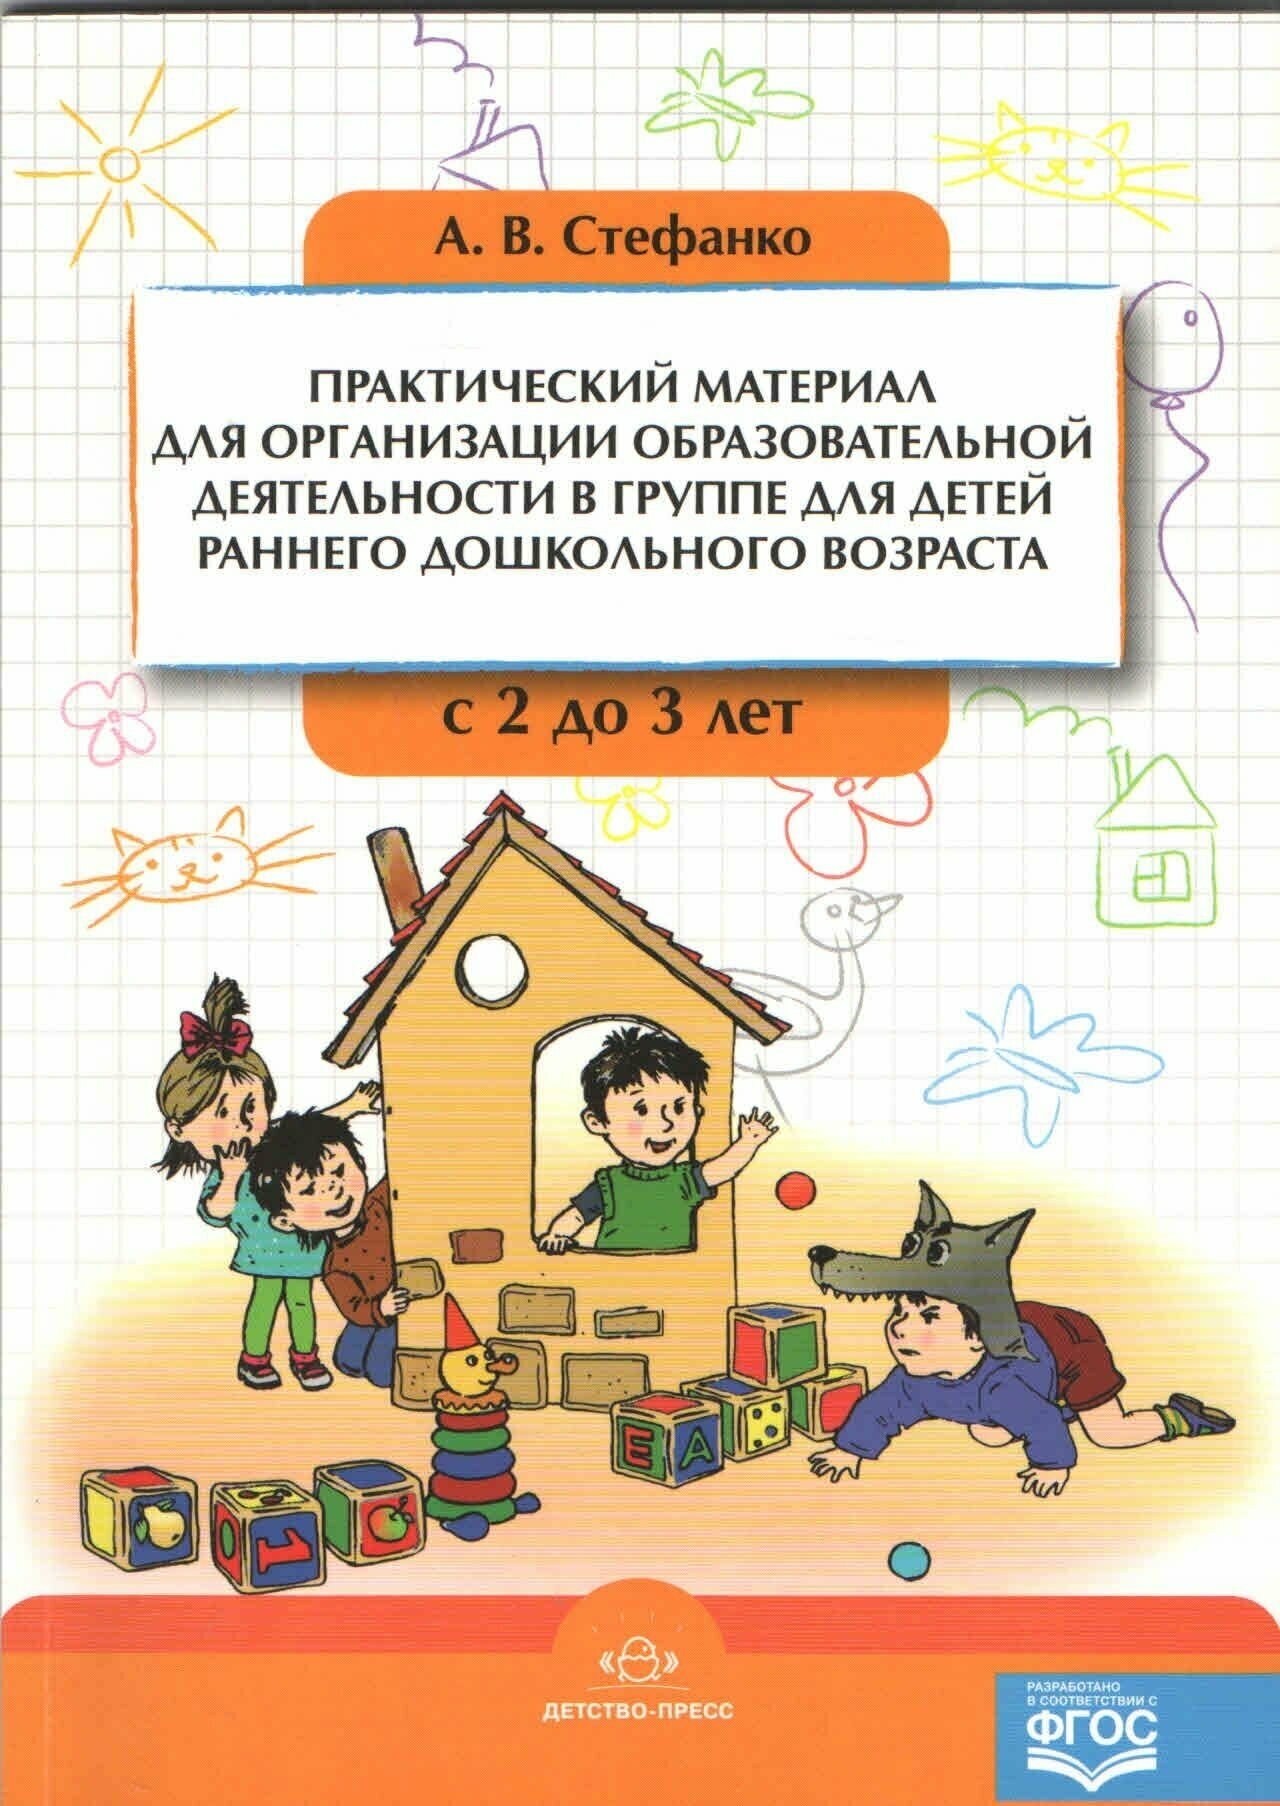 Практический материал для организации образовательной деятельности в группе для детей раннего дошкольного возраста с 2 до 3 лет - фото №6